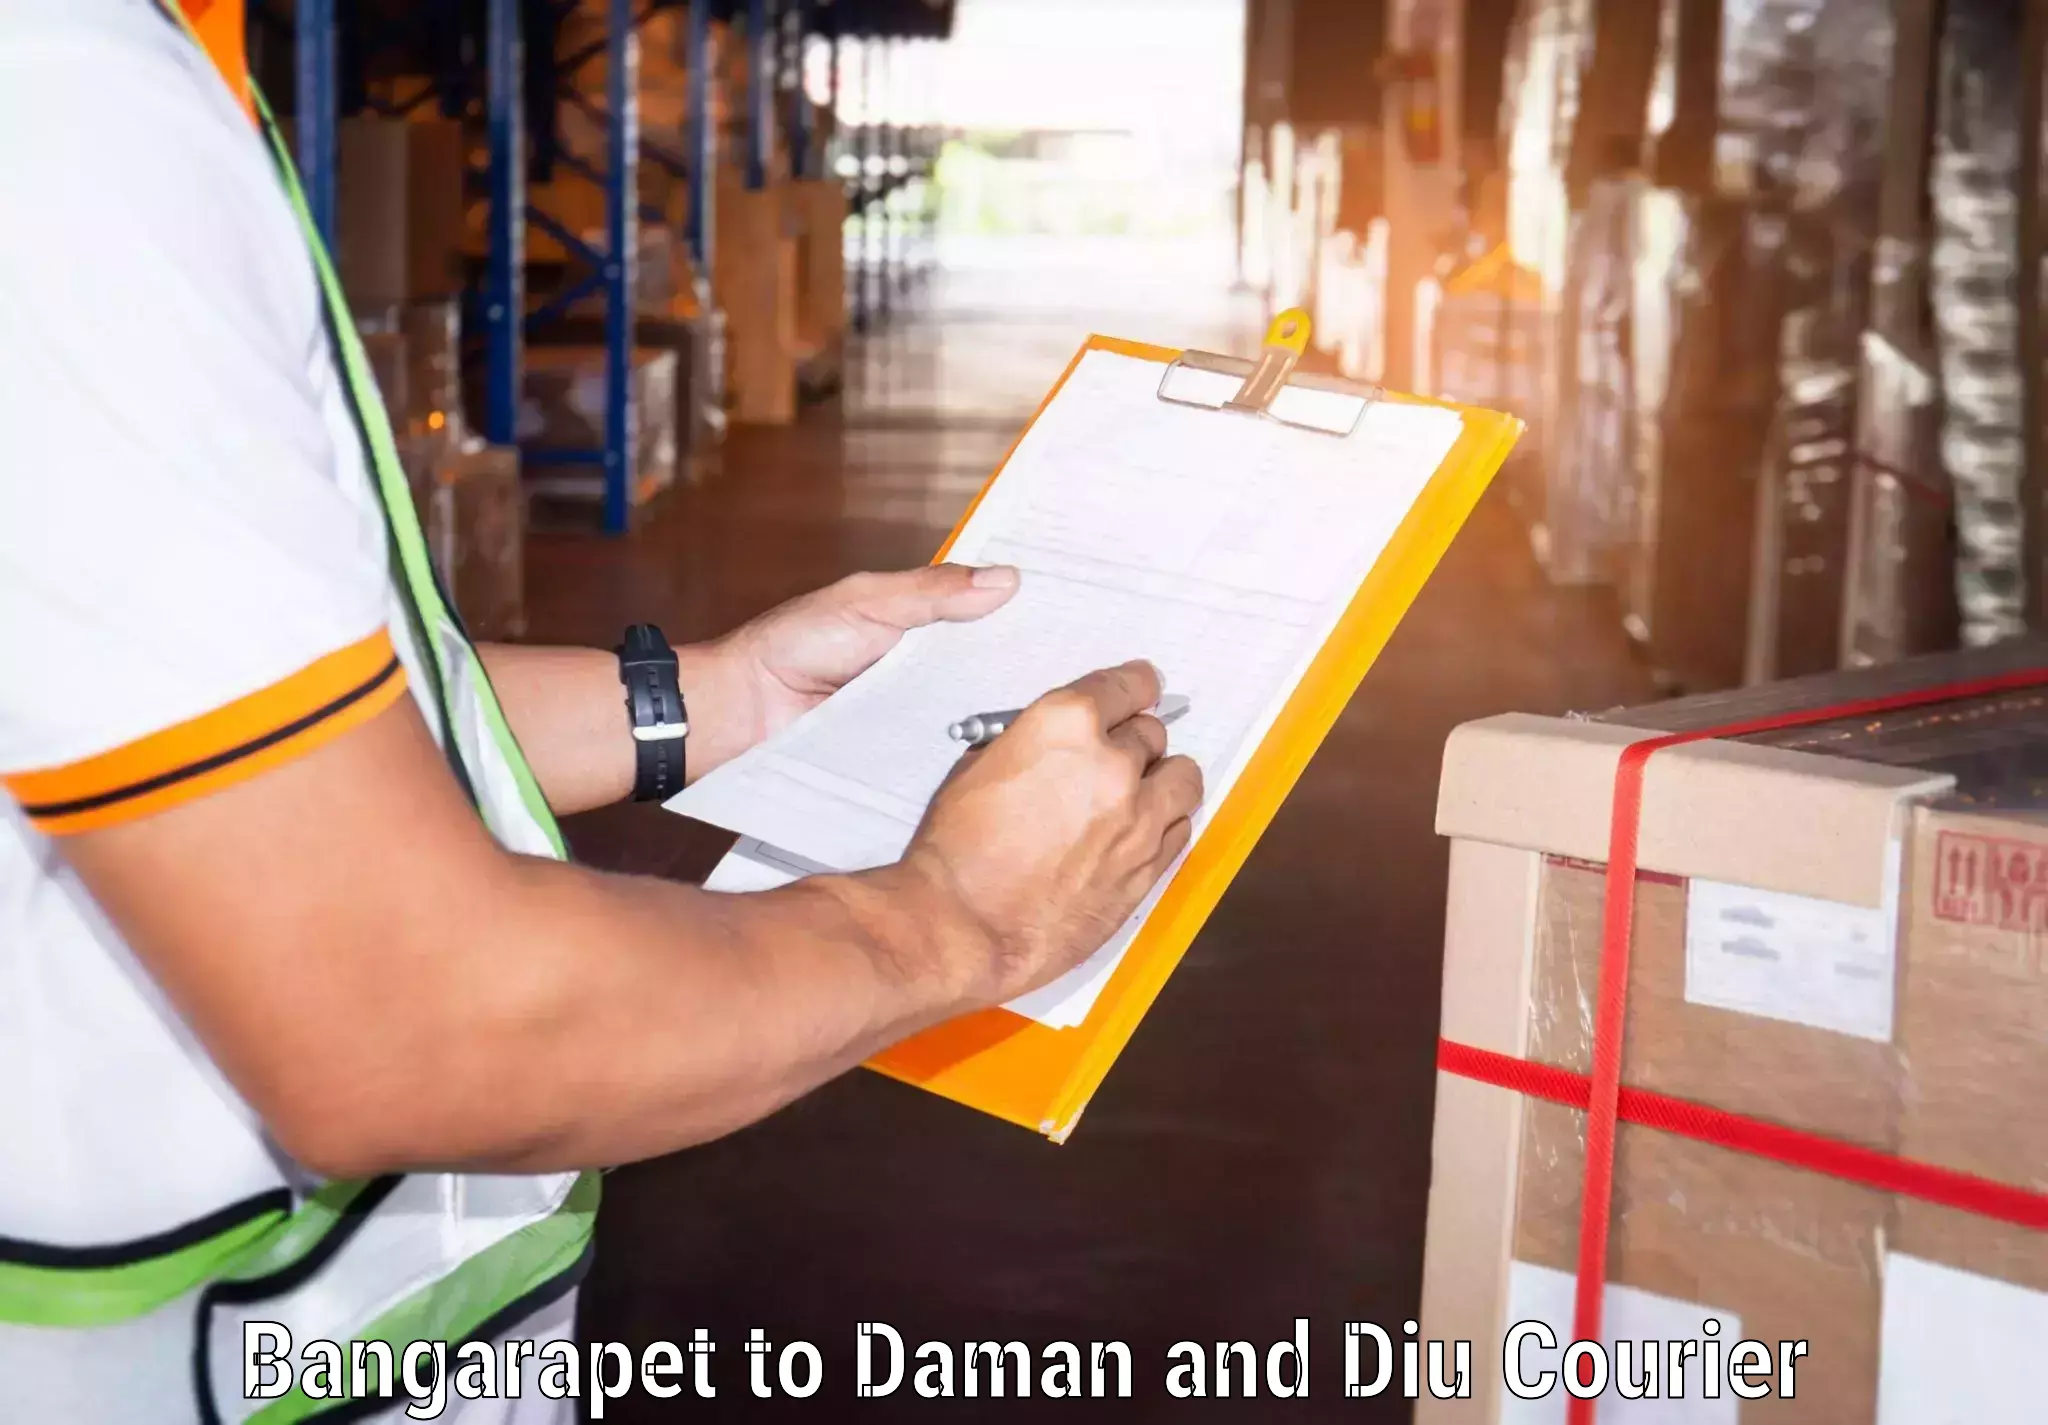 Courier service comparison Bangarapet to Daman